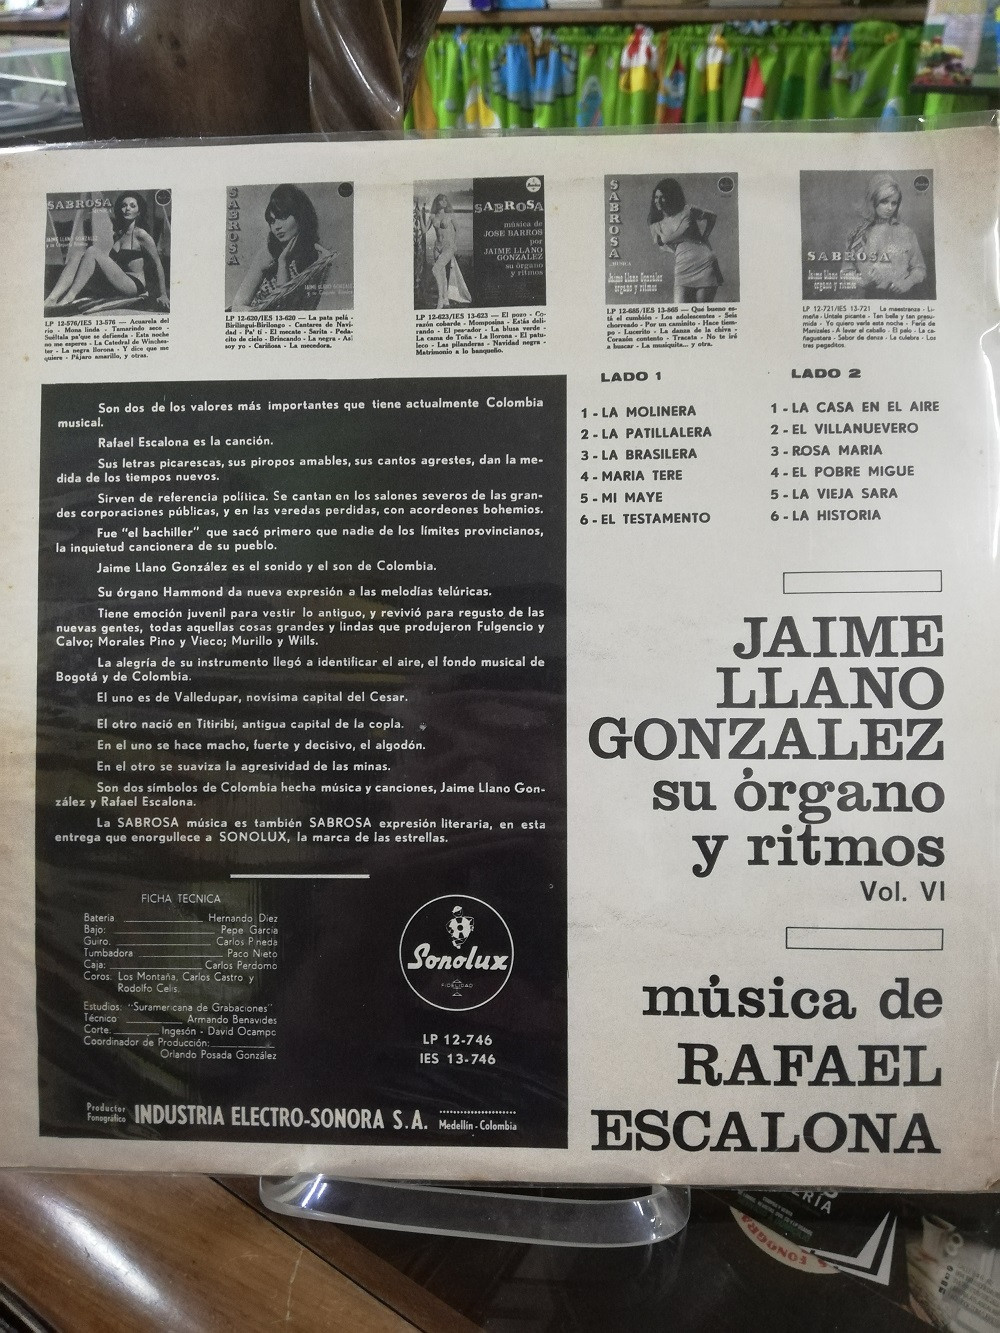 Imagen LP JAIME LLANO GONZALEZ SU ORGANO Y RITMOS - SABROSA MÚSICA DE RAFAEL ESCALONA 2